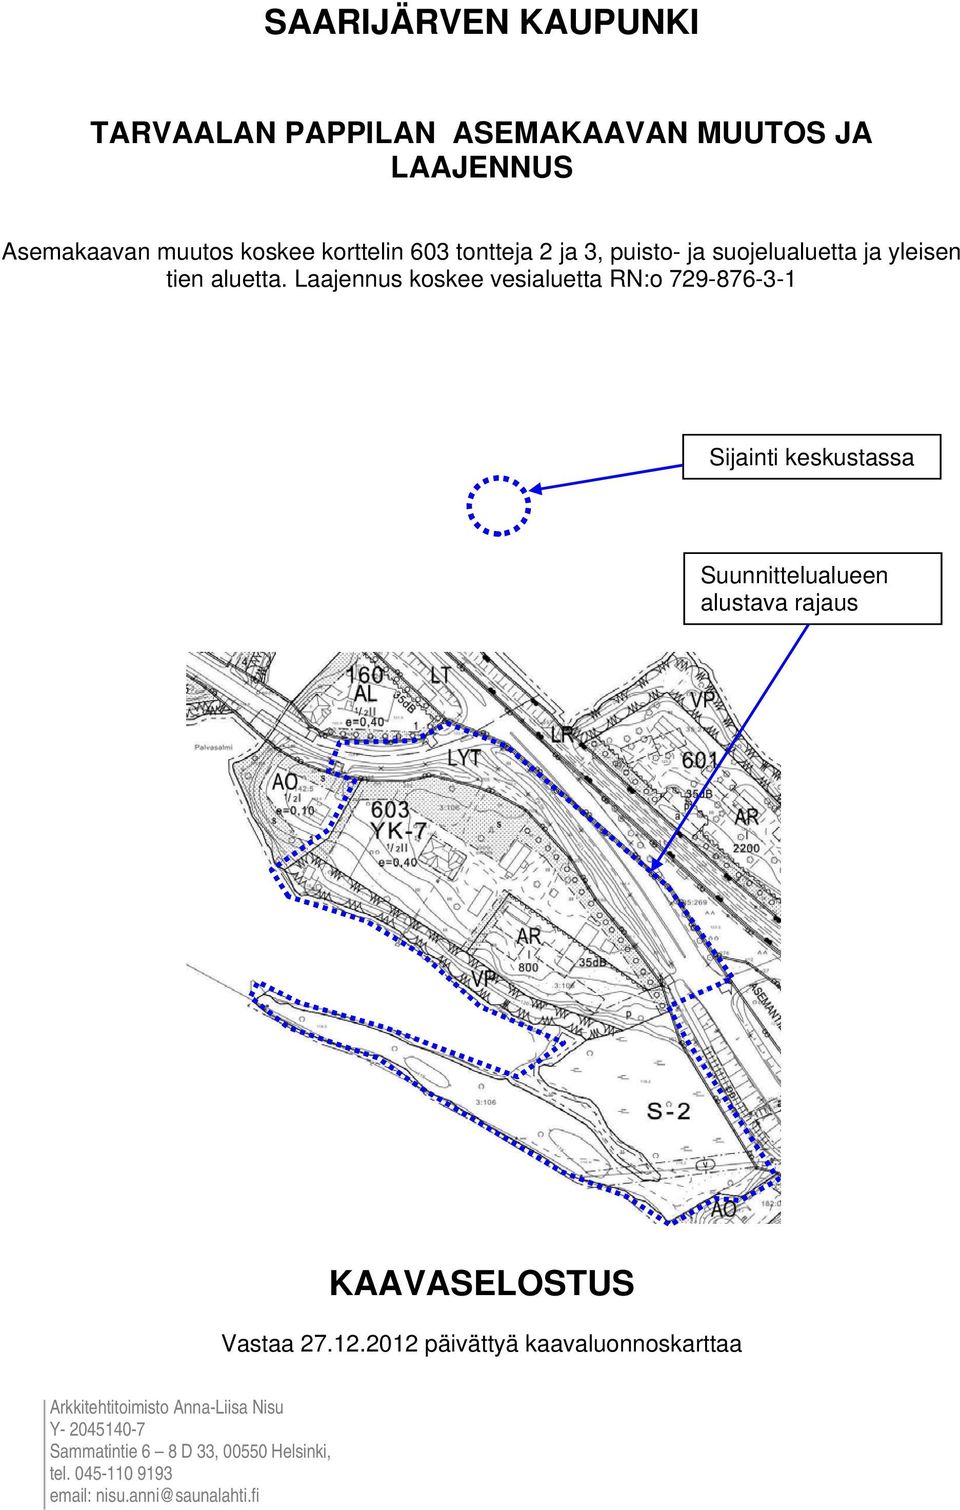 Laajennus koskee vesialuetta RN:o 729-876-3-1 Sijainti keskustassa Suunnittelualueen alustava rajaus Vastaa 27.